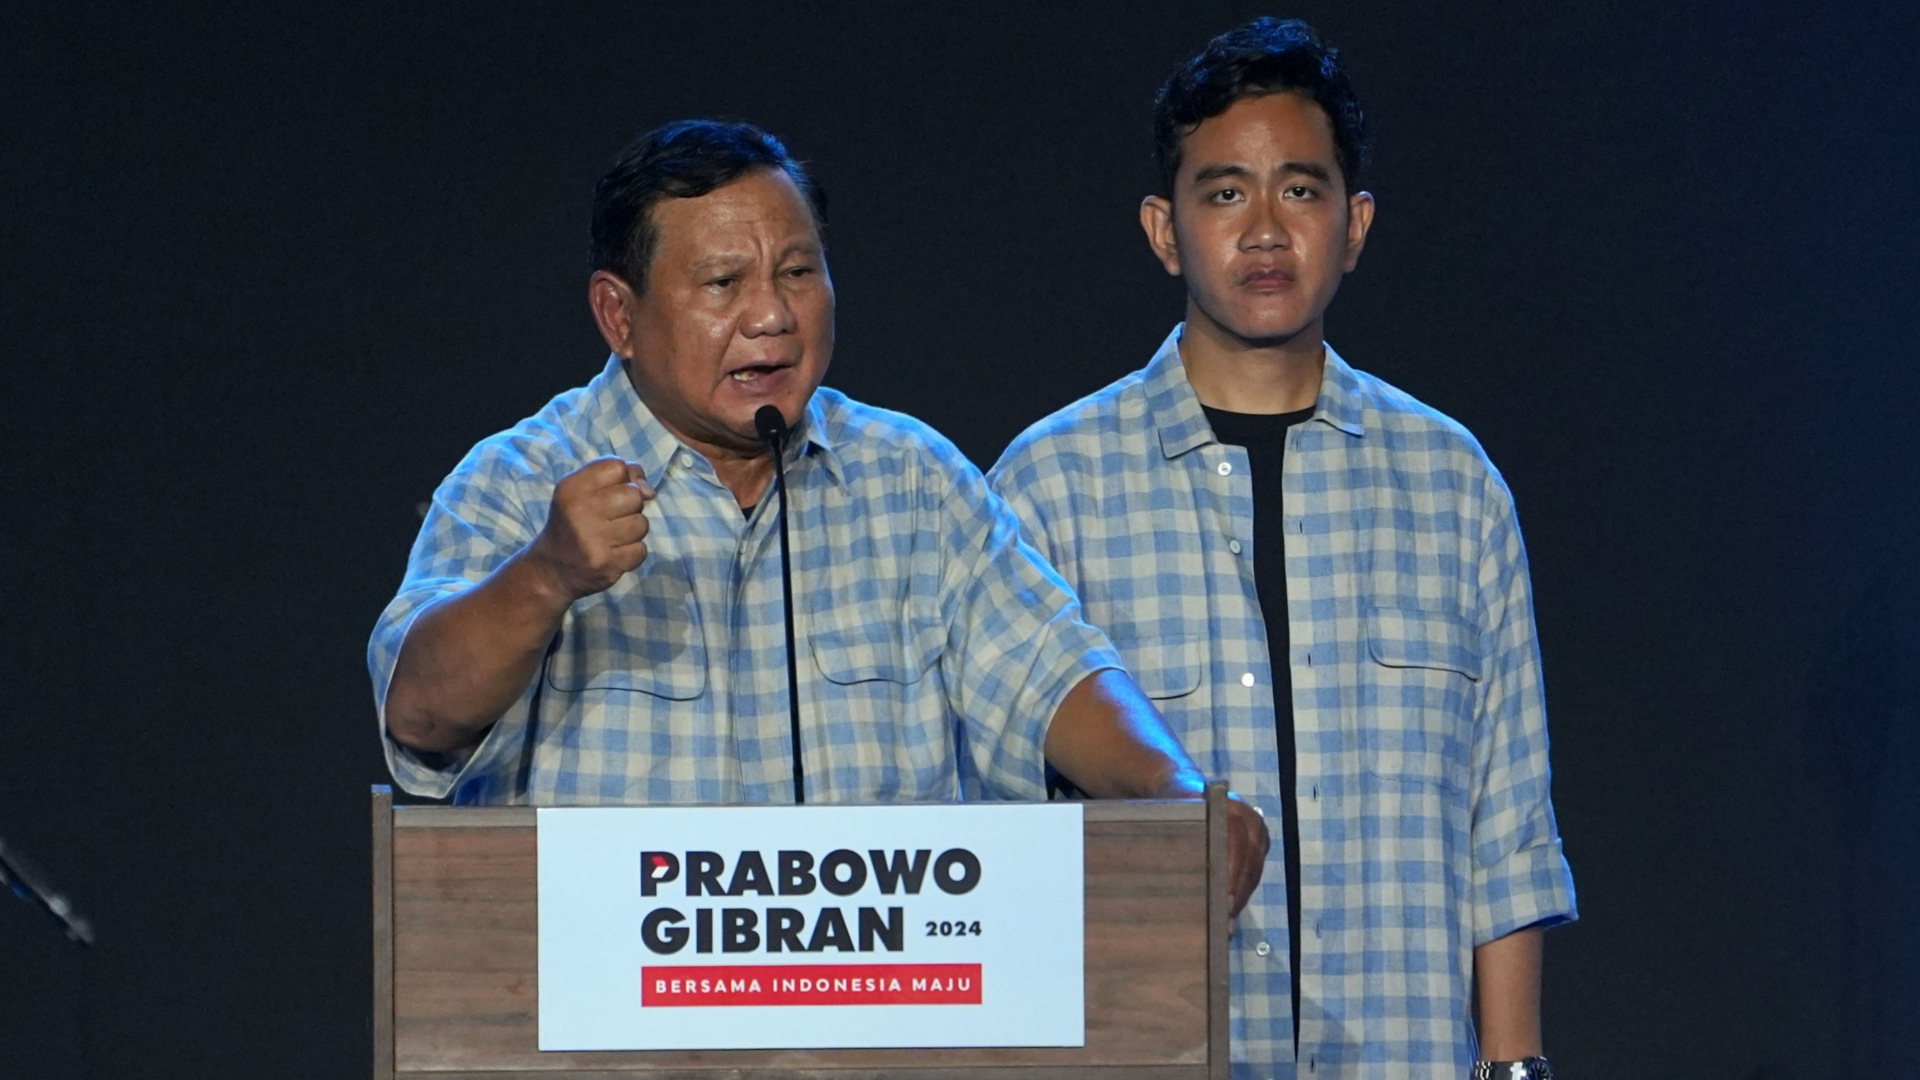  Deretan Janji Prabowo Berbiaya Jumbo selain Makan Siang Gratis